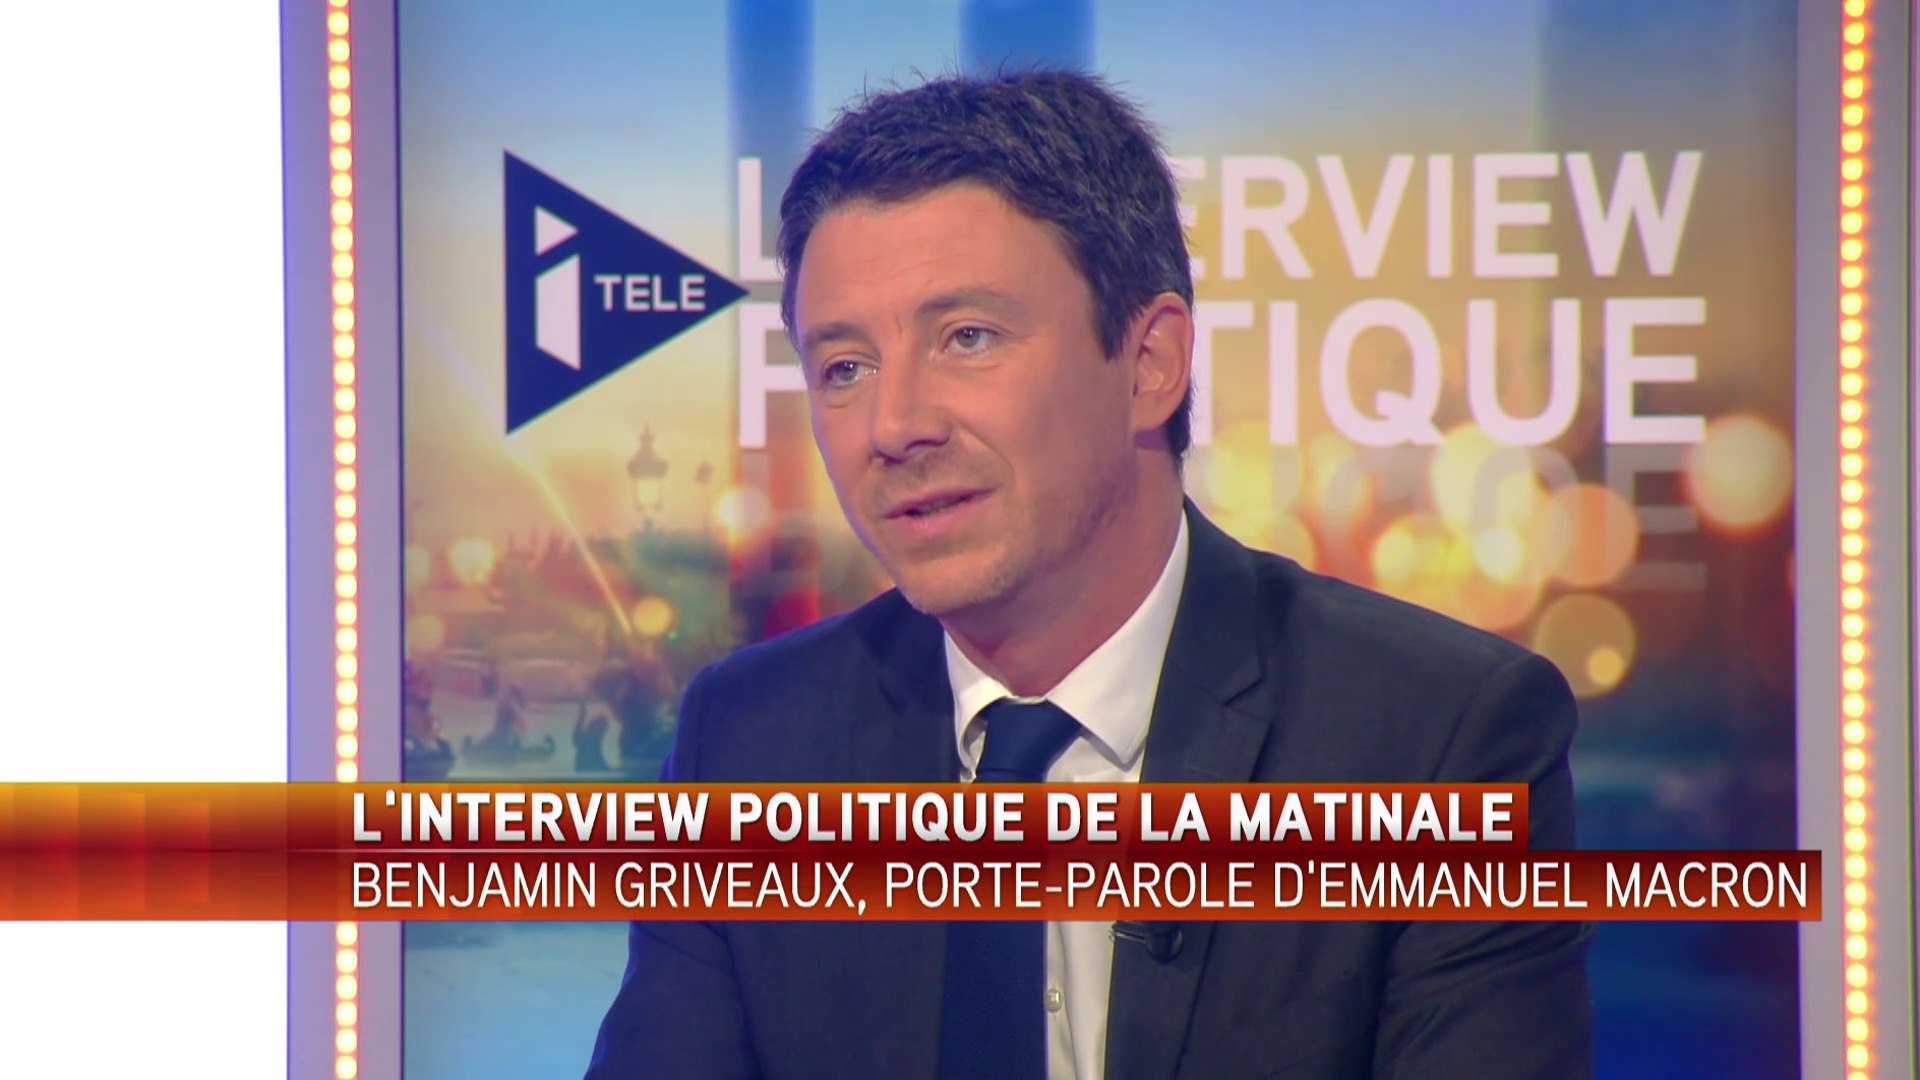 Benjamin Griveaux, porte-parole d'Emmanuel Macron - Vidéo Dailymotion